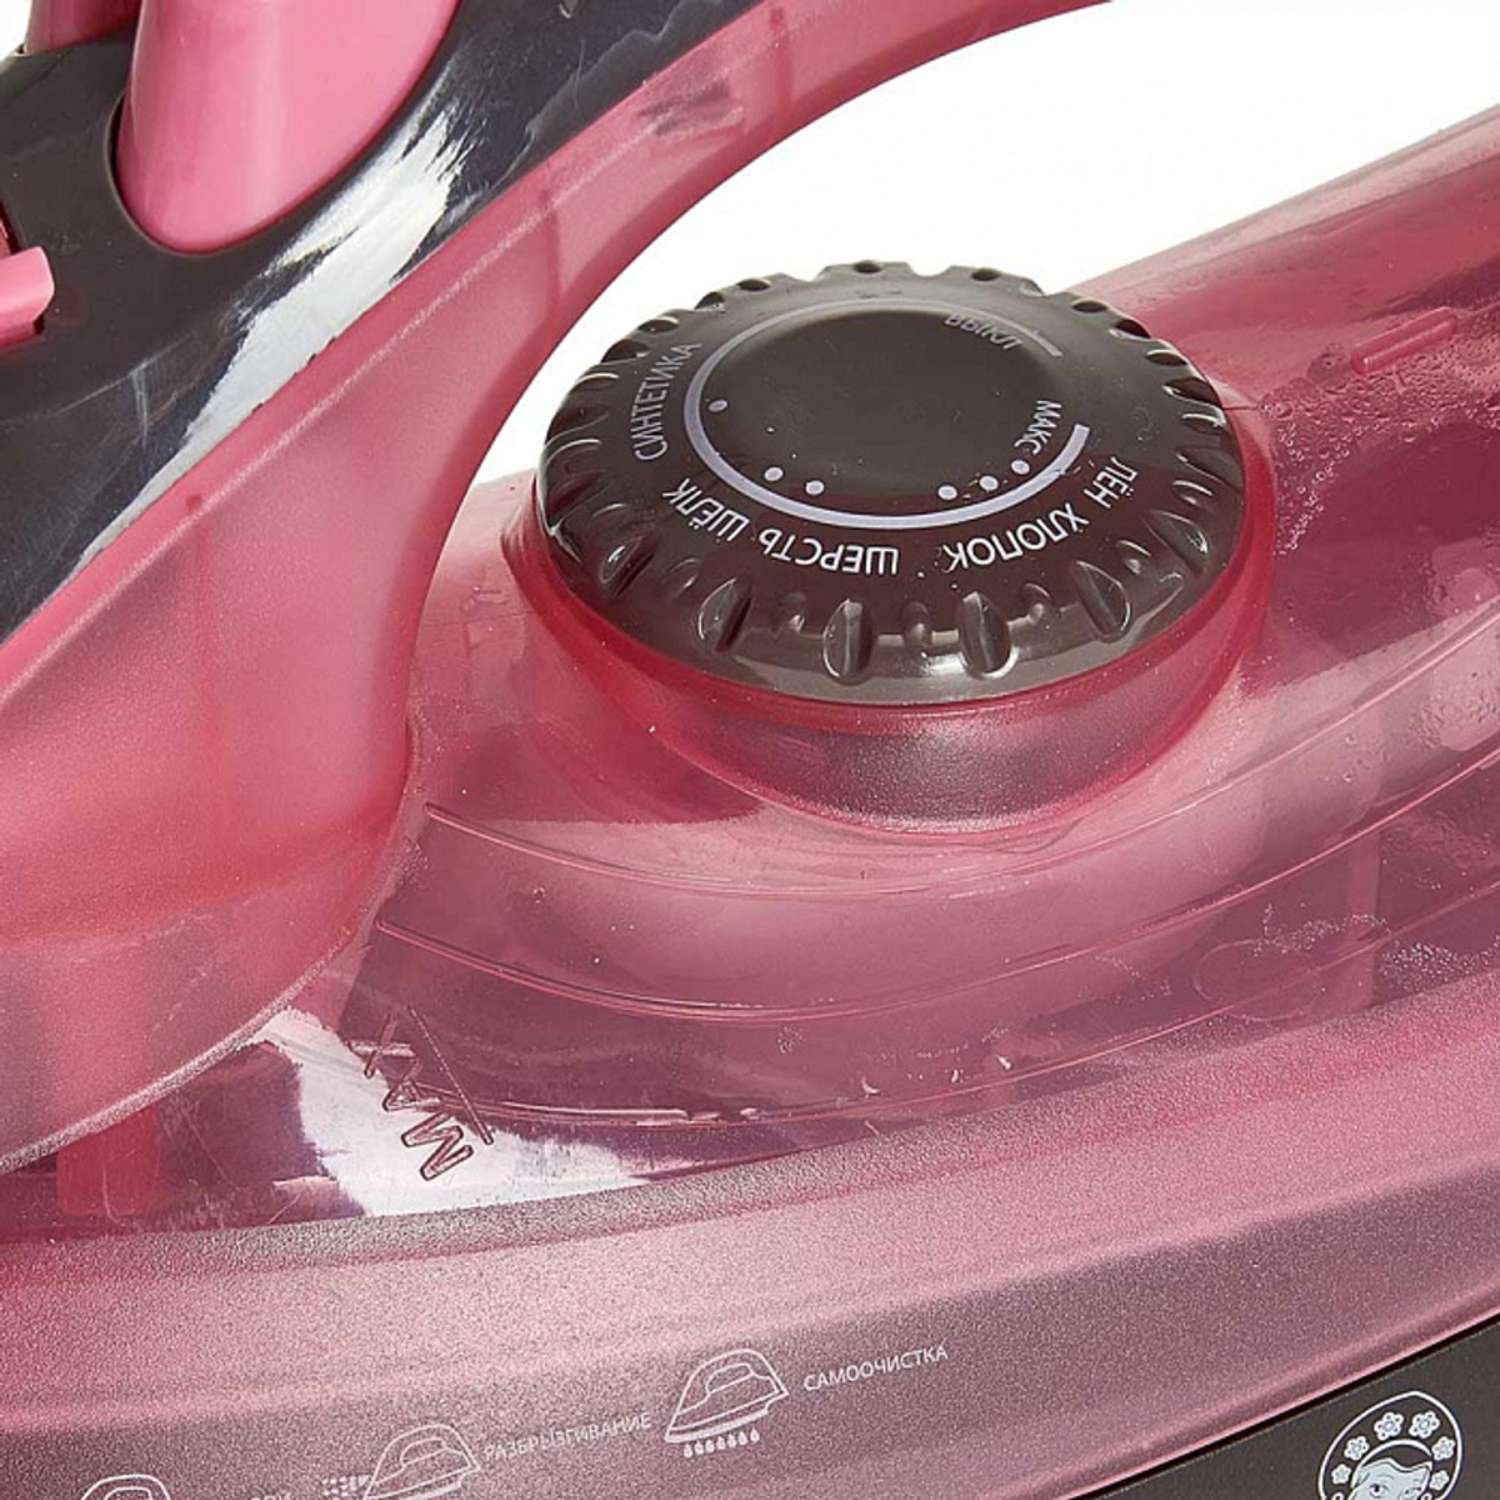 Утюг Василиса ВА-2001 розовый с коричневым 2200 Вт антипригарное покрытие самоочистка паровой удар - фото 3